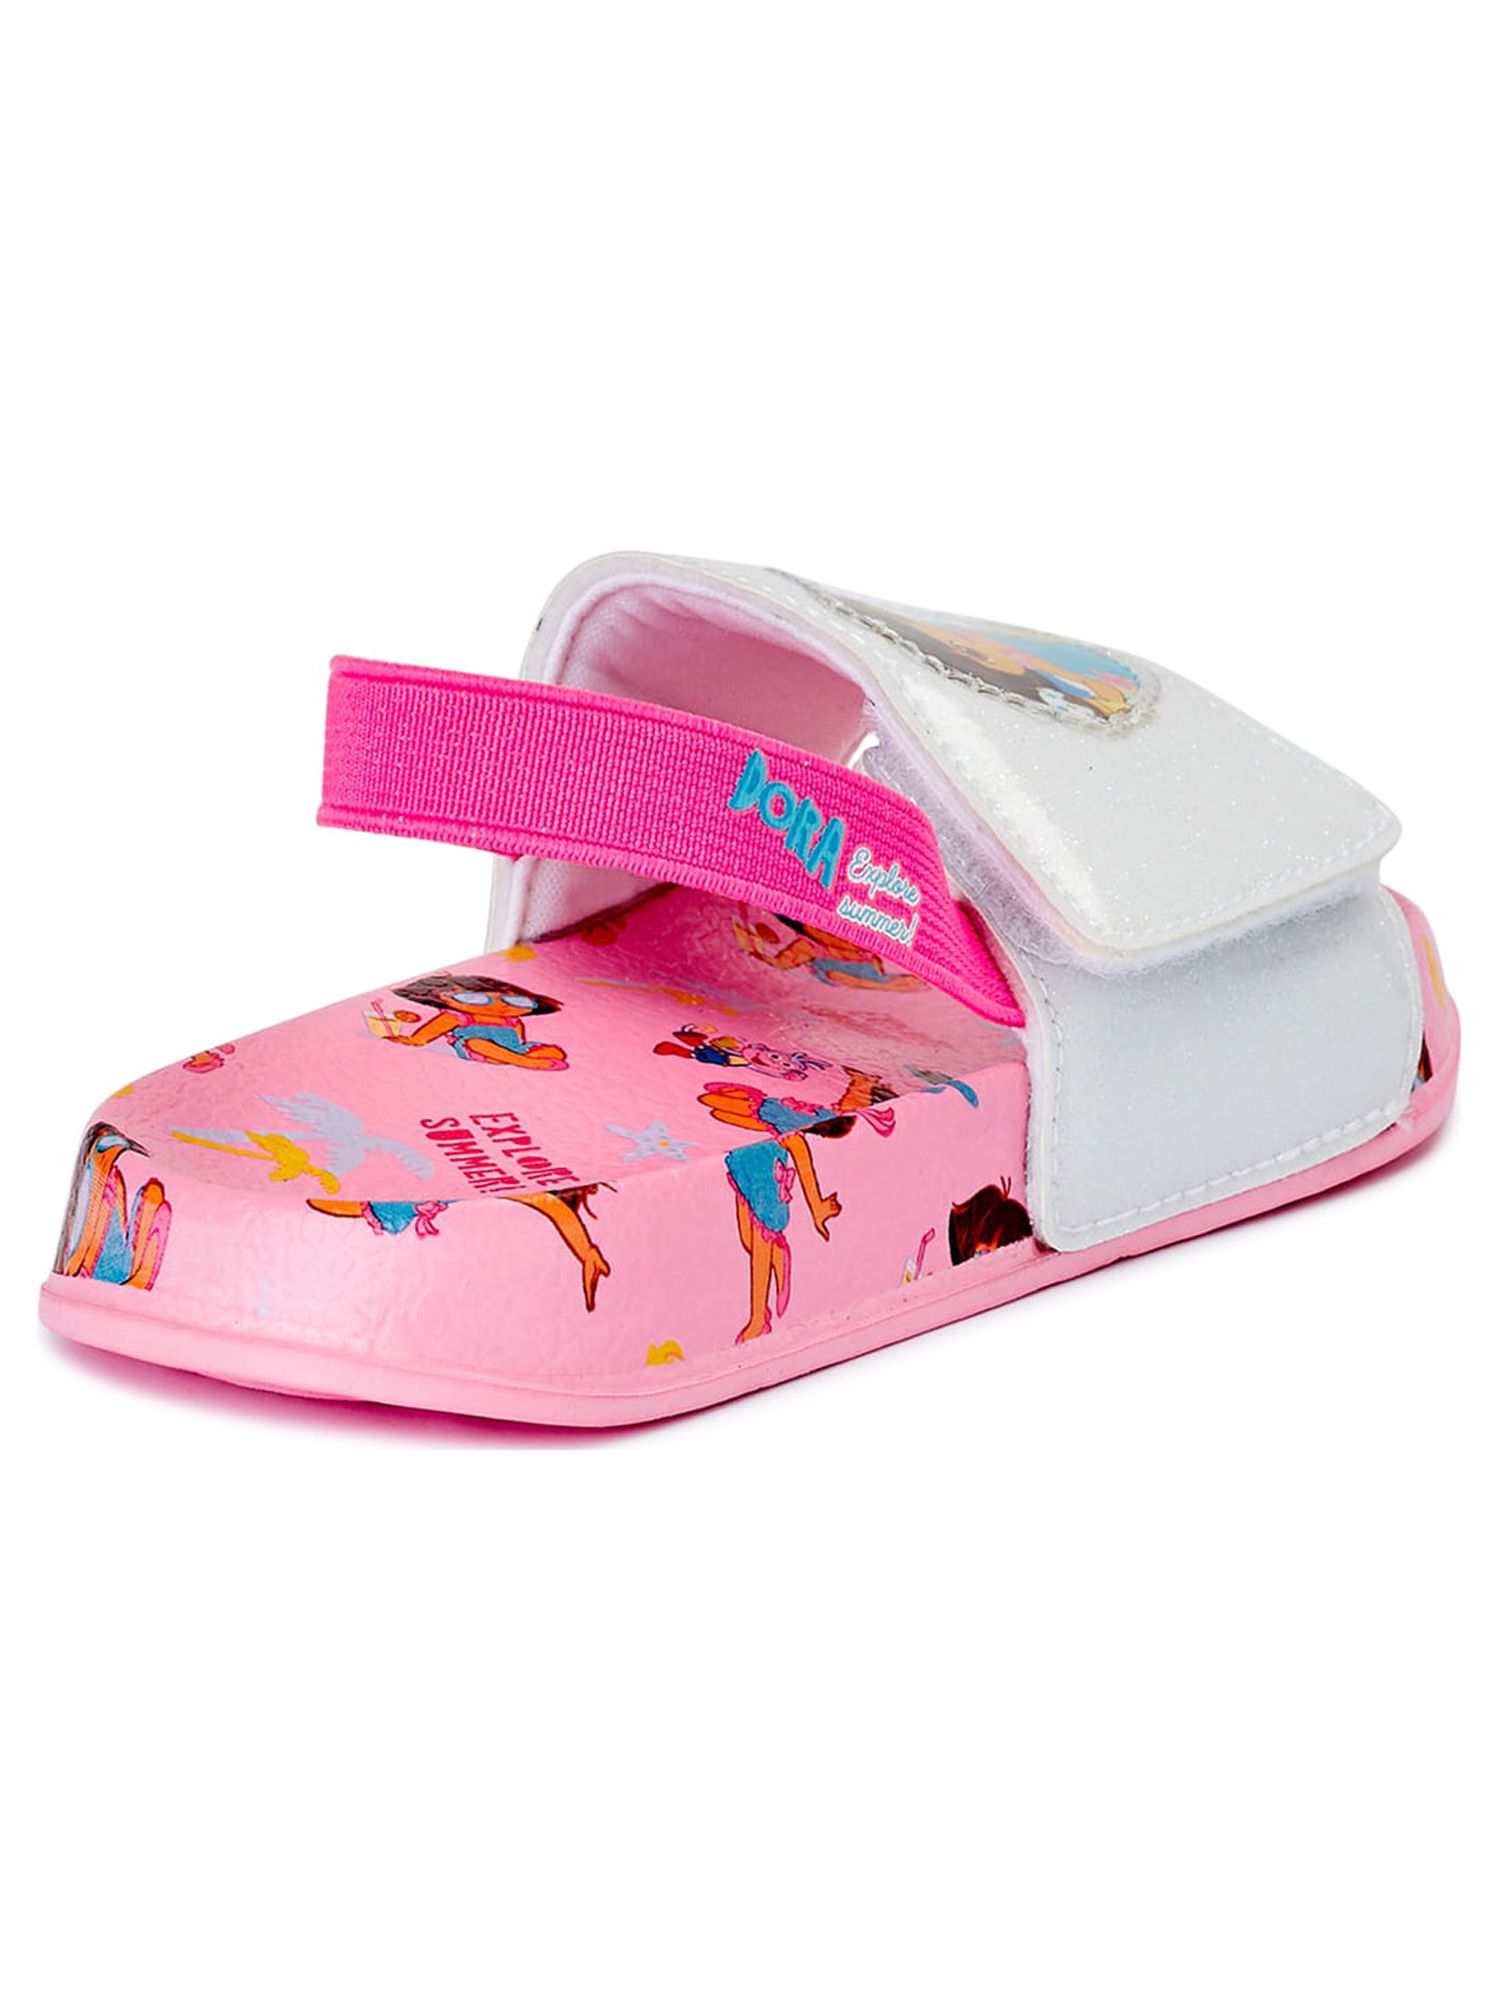 Dora the Explorer Toddler Girls' Beach Slide Sandals - image 3 of 6